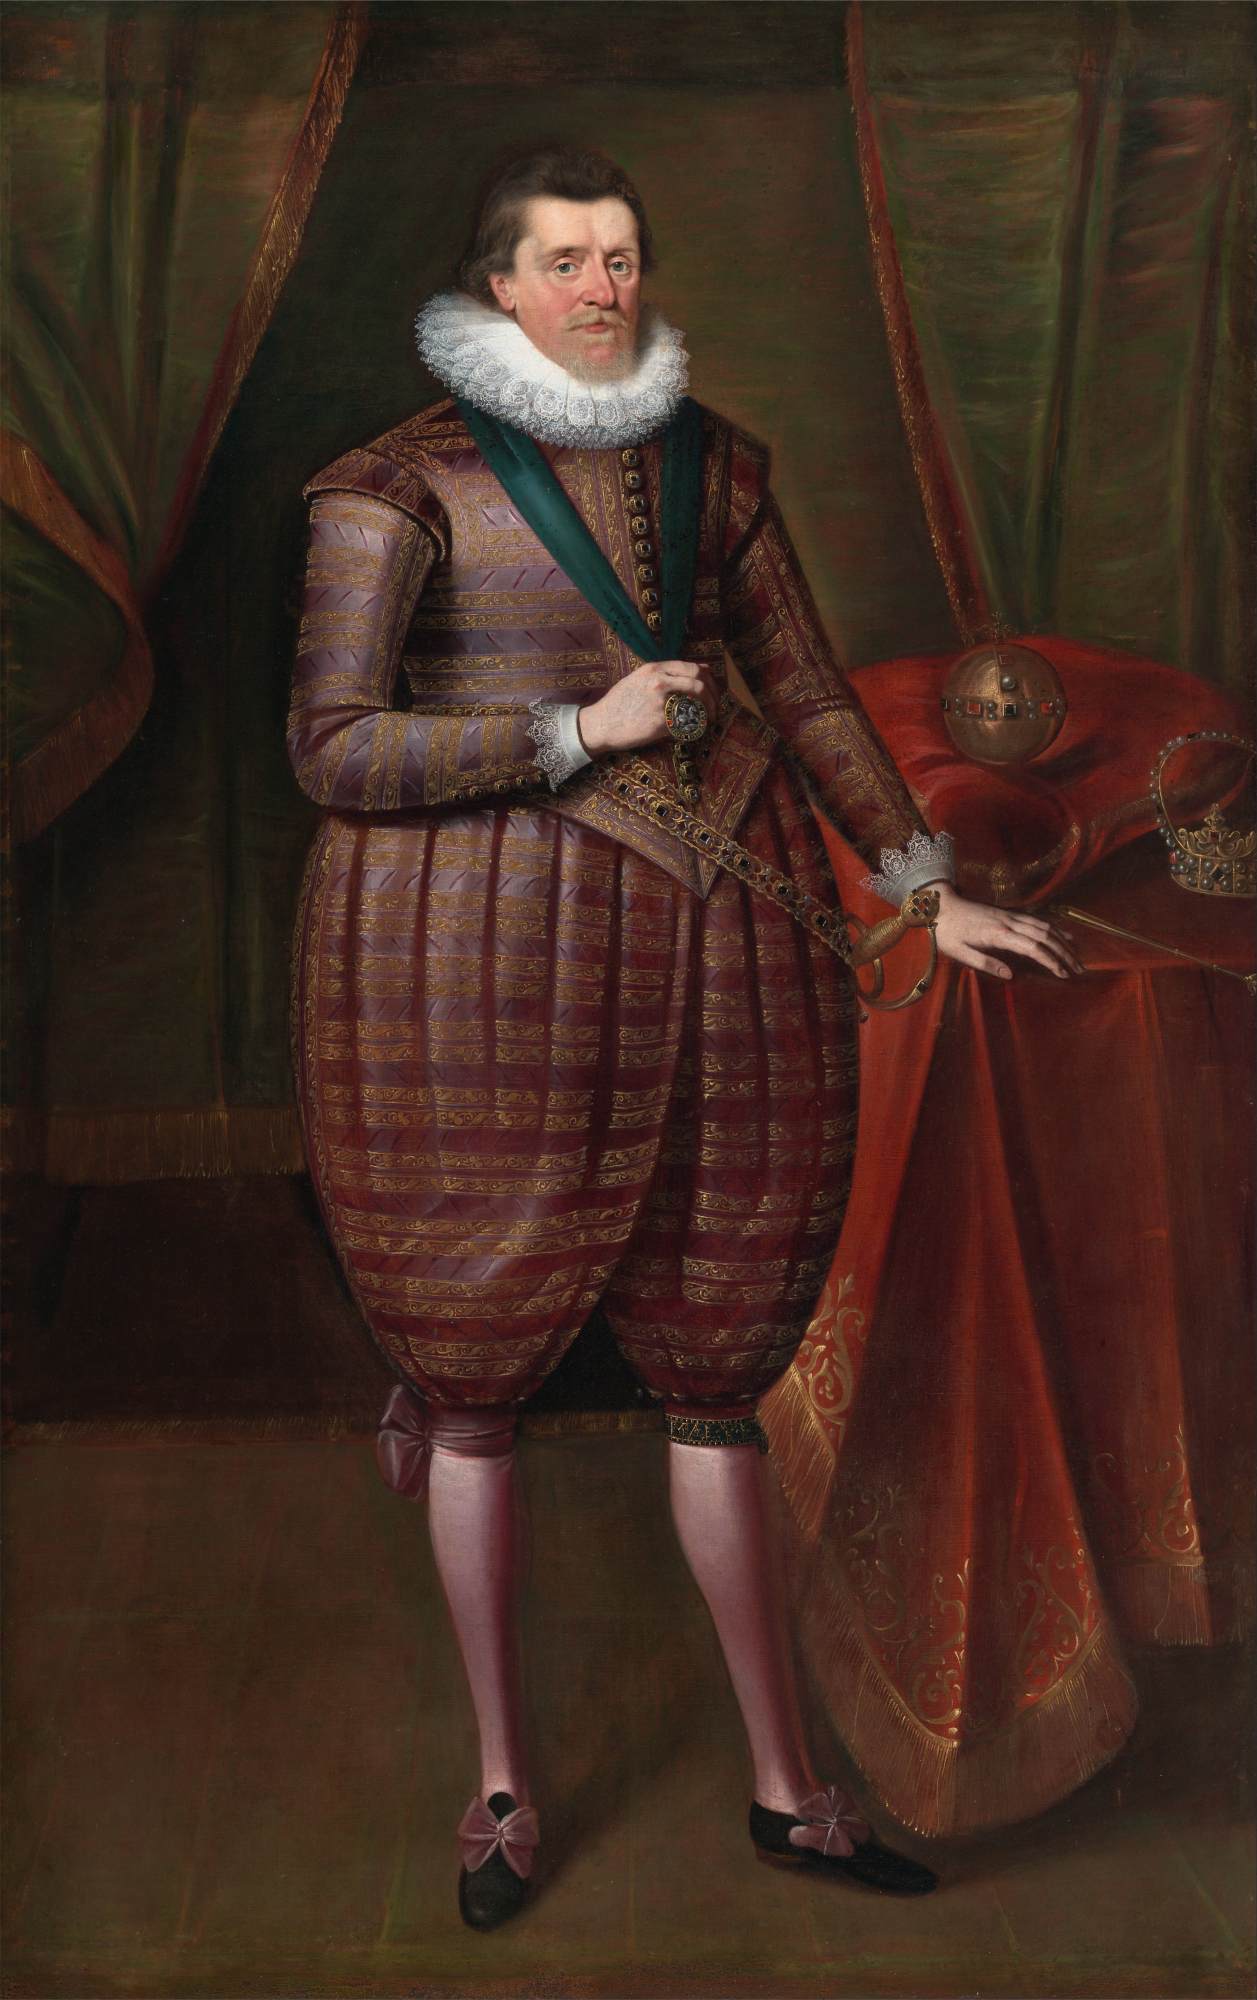 Santiago I von England (Santiago VI. Von Schottland)